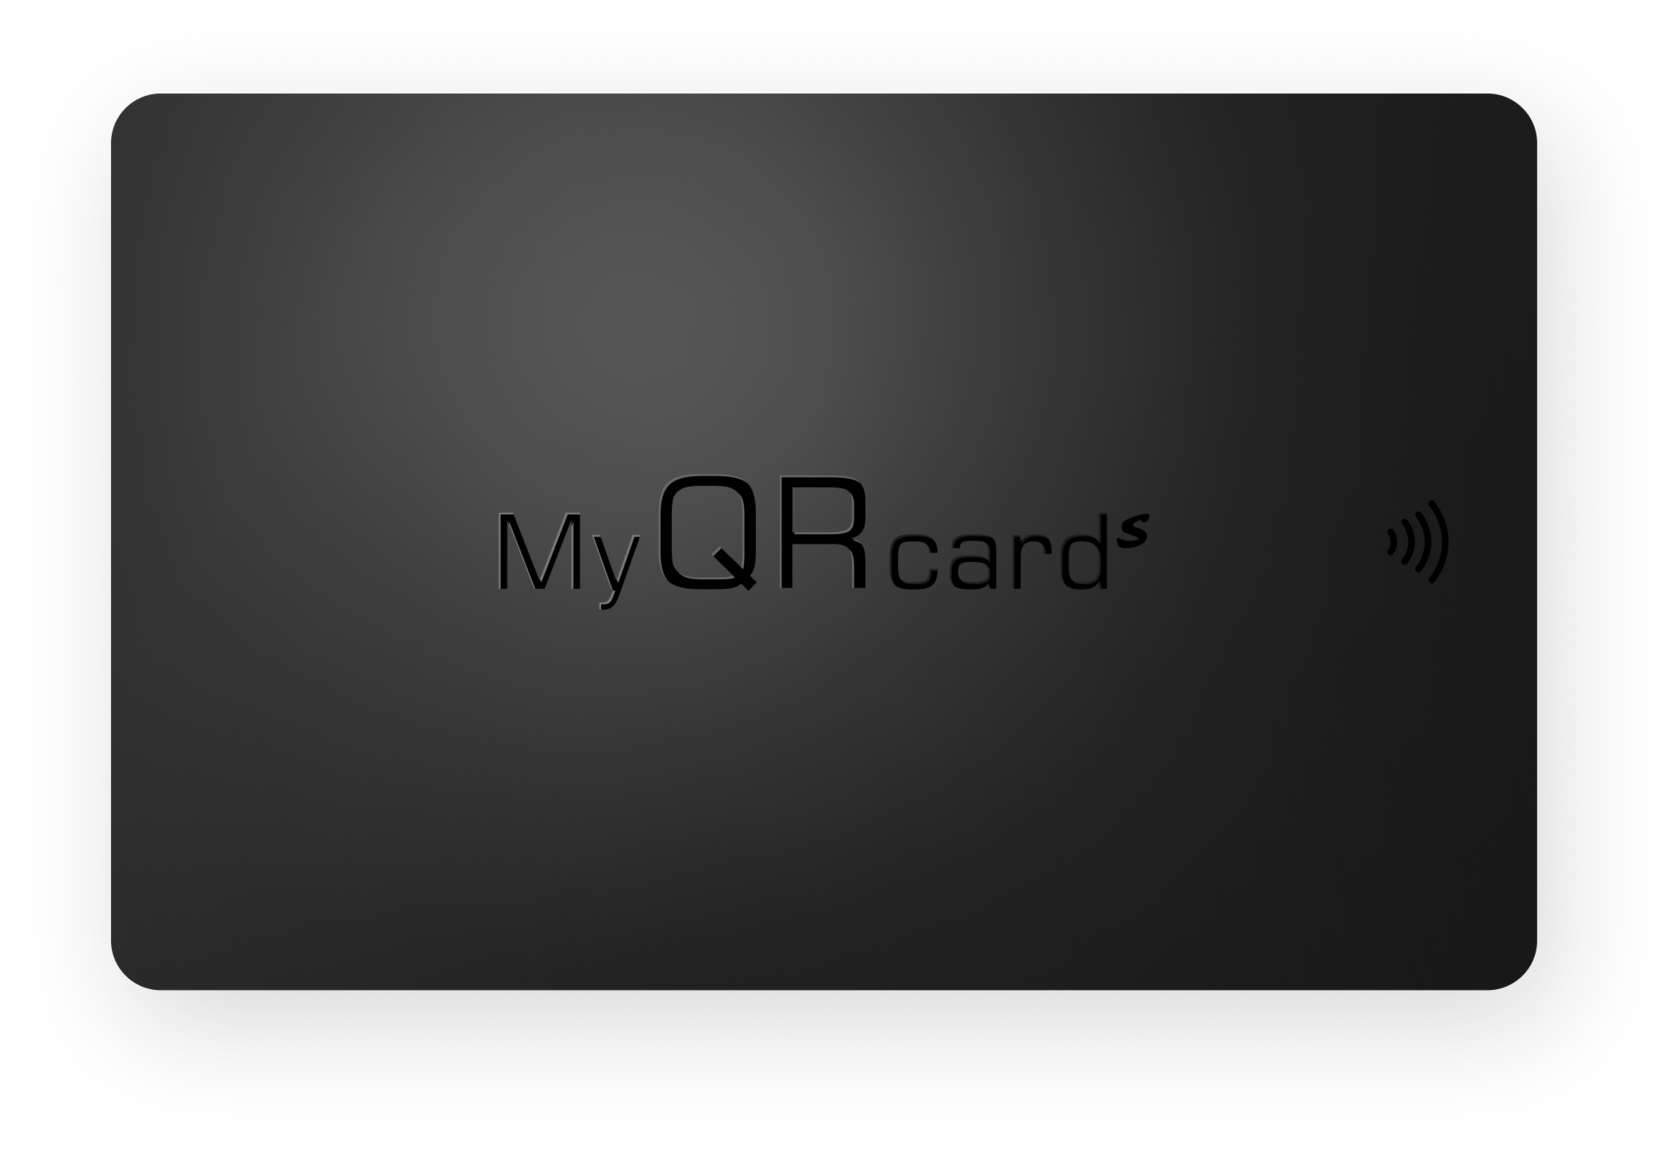 Электронная визитка MyQRcards. Виртуальная визитка. Замена бумажных визиток